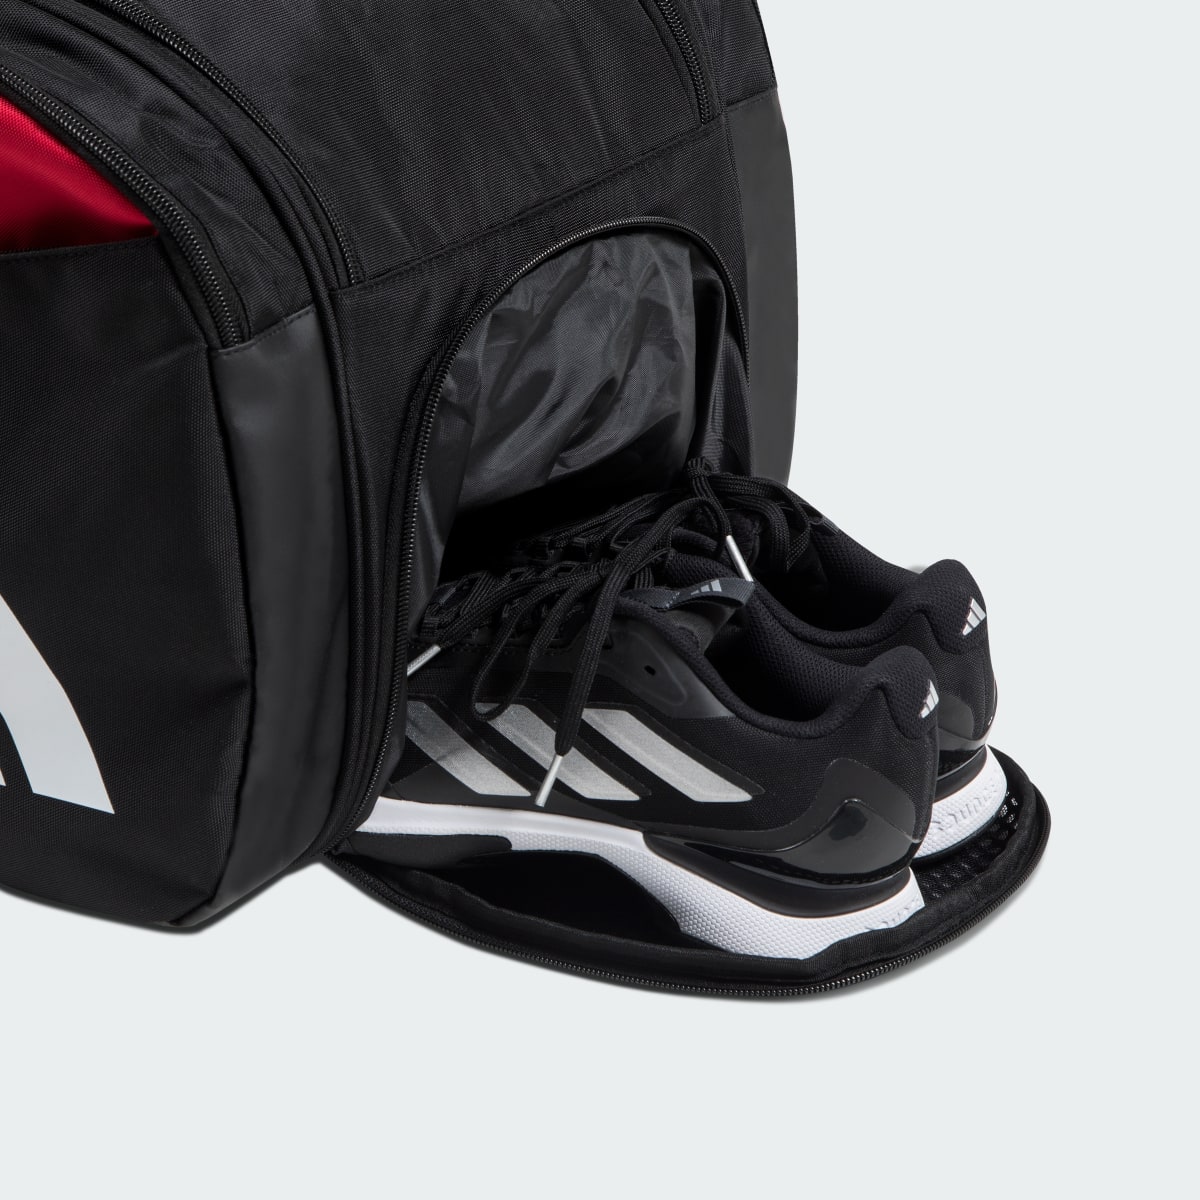 Adidas Racket Bag Multi-Game 3.3 Black. 5